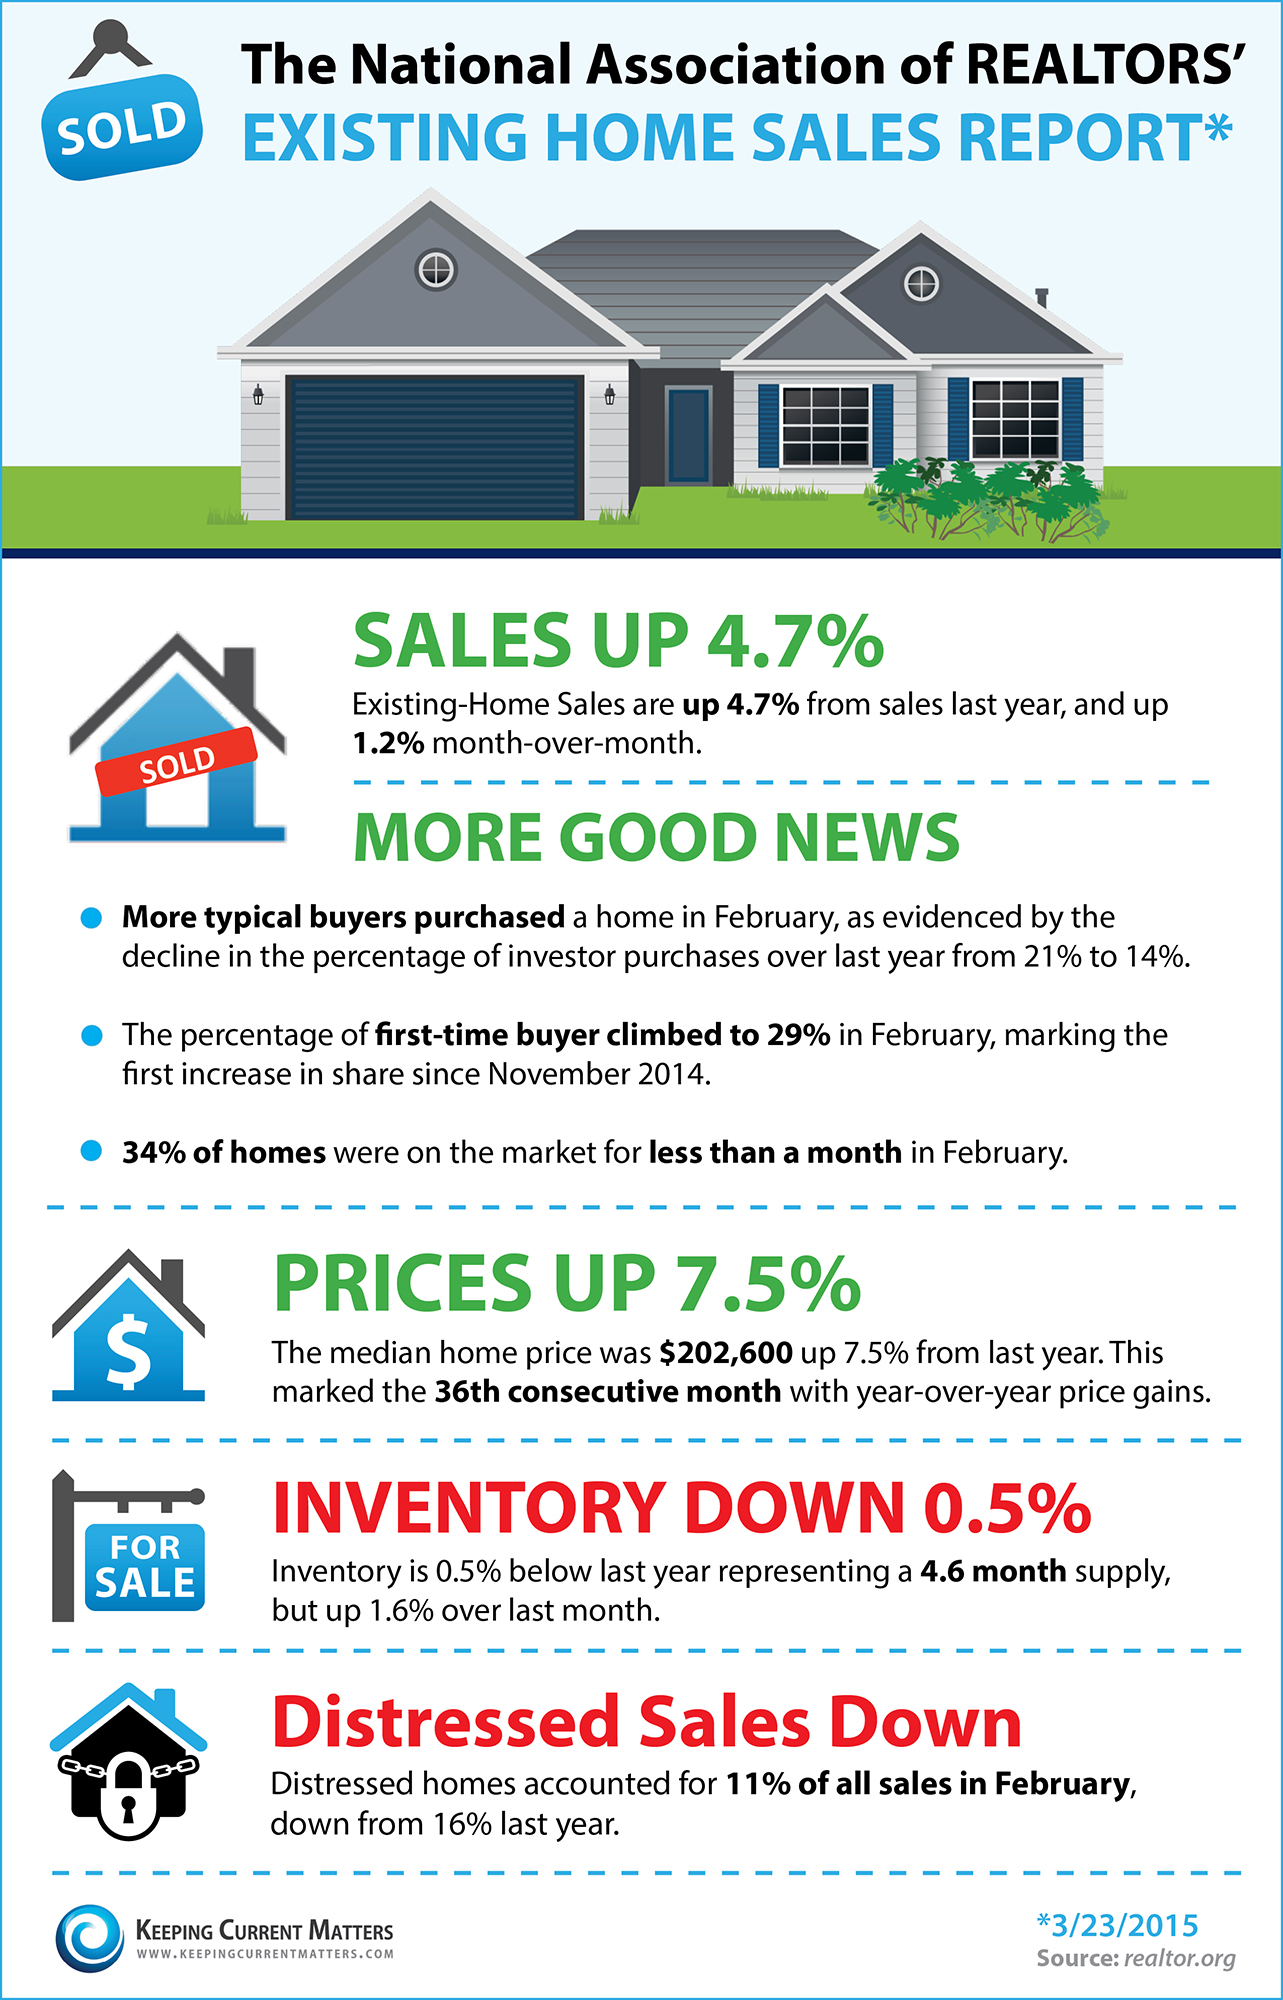 Houses For Sale Charleston SC: Good Market News